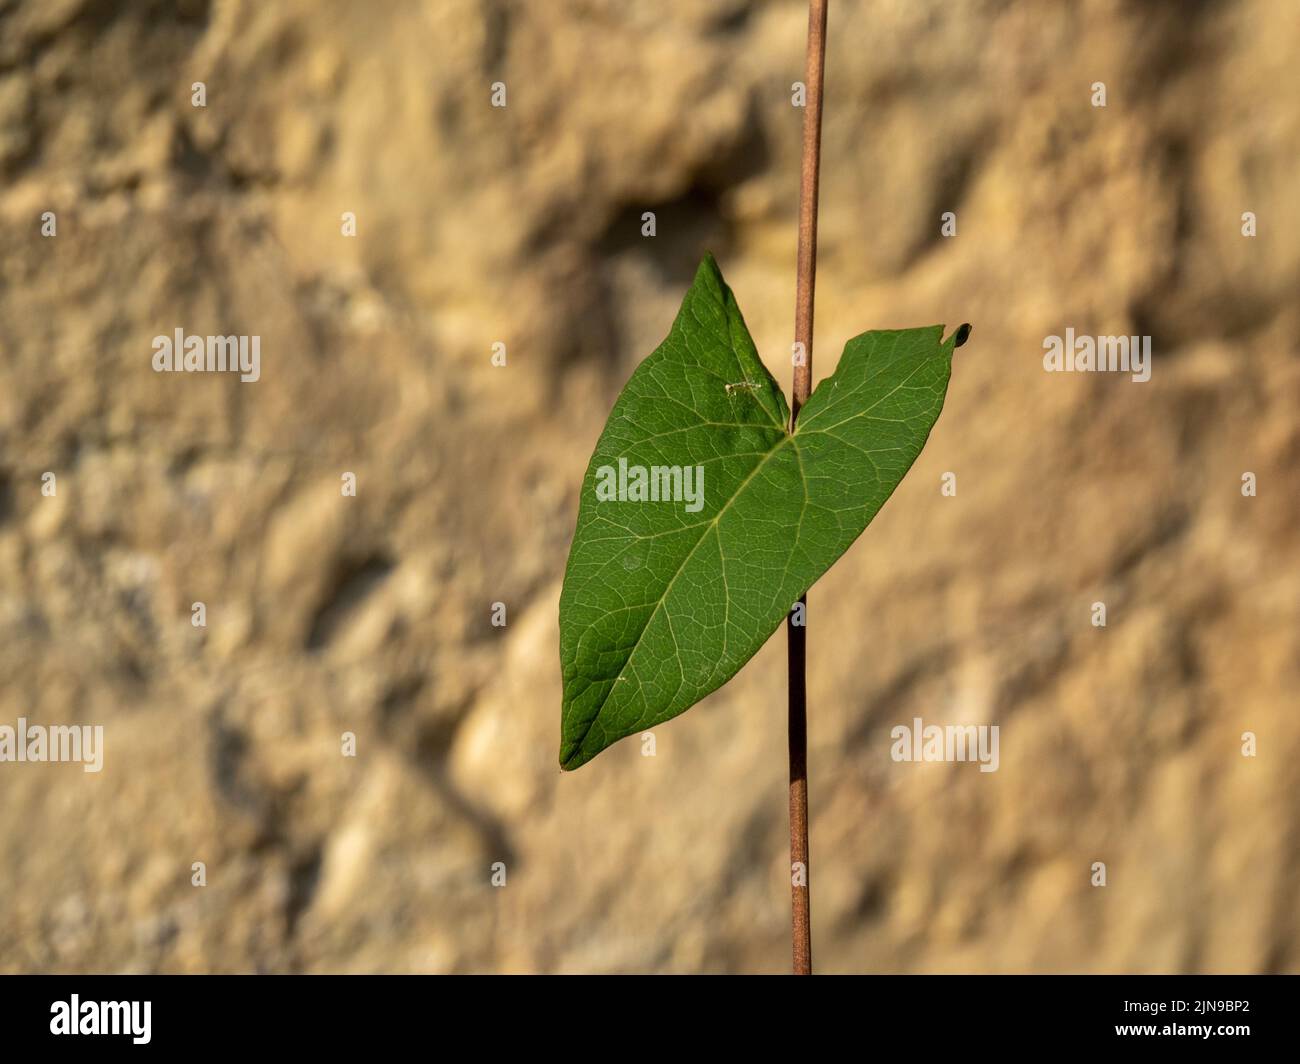 Une seule feuille en forme de cœur, probablement de l'herbe à poux, devant le mur. Mise au point différentielle. ROYAUME-UNI. Banque D'Images